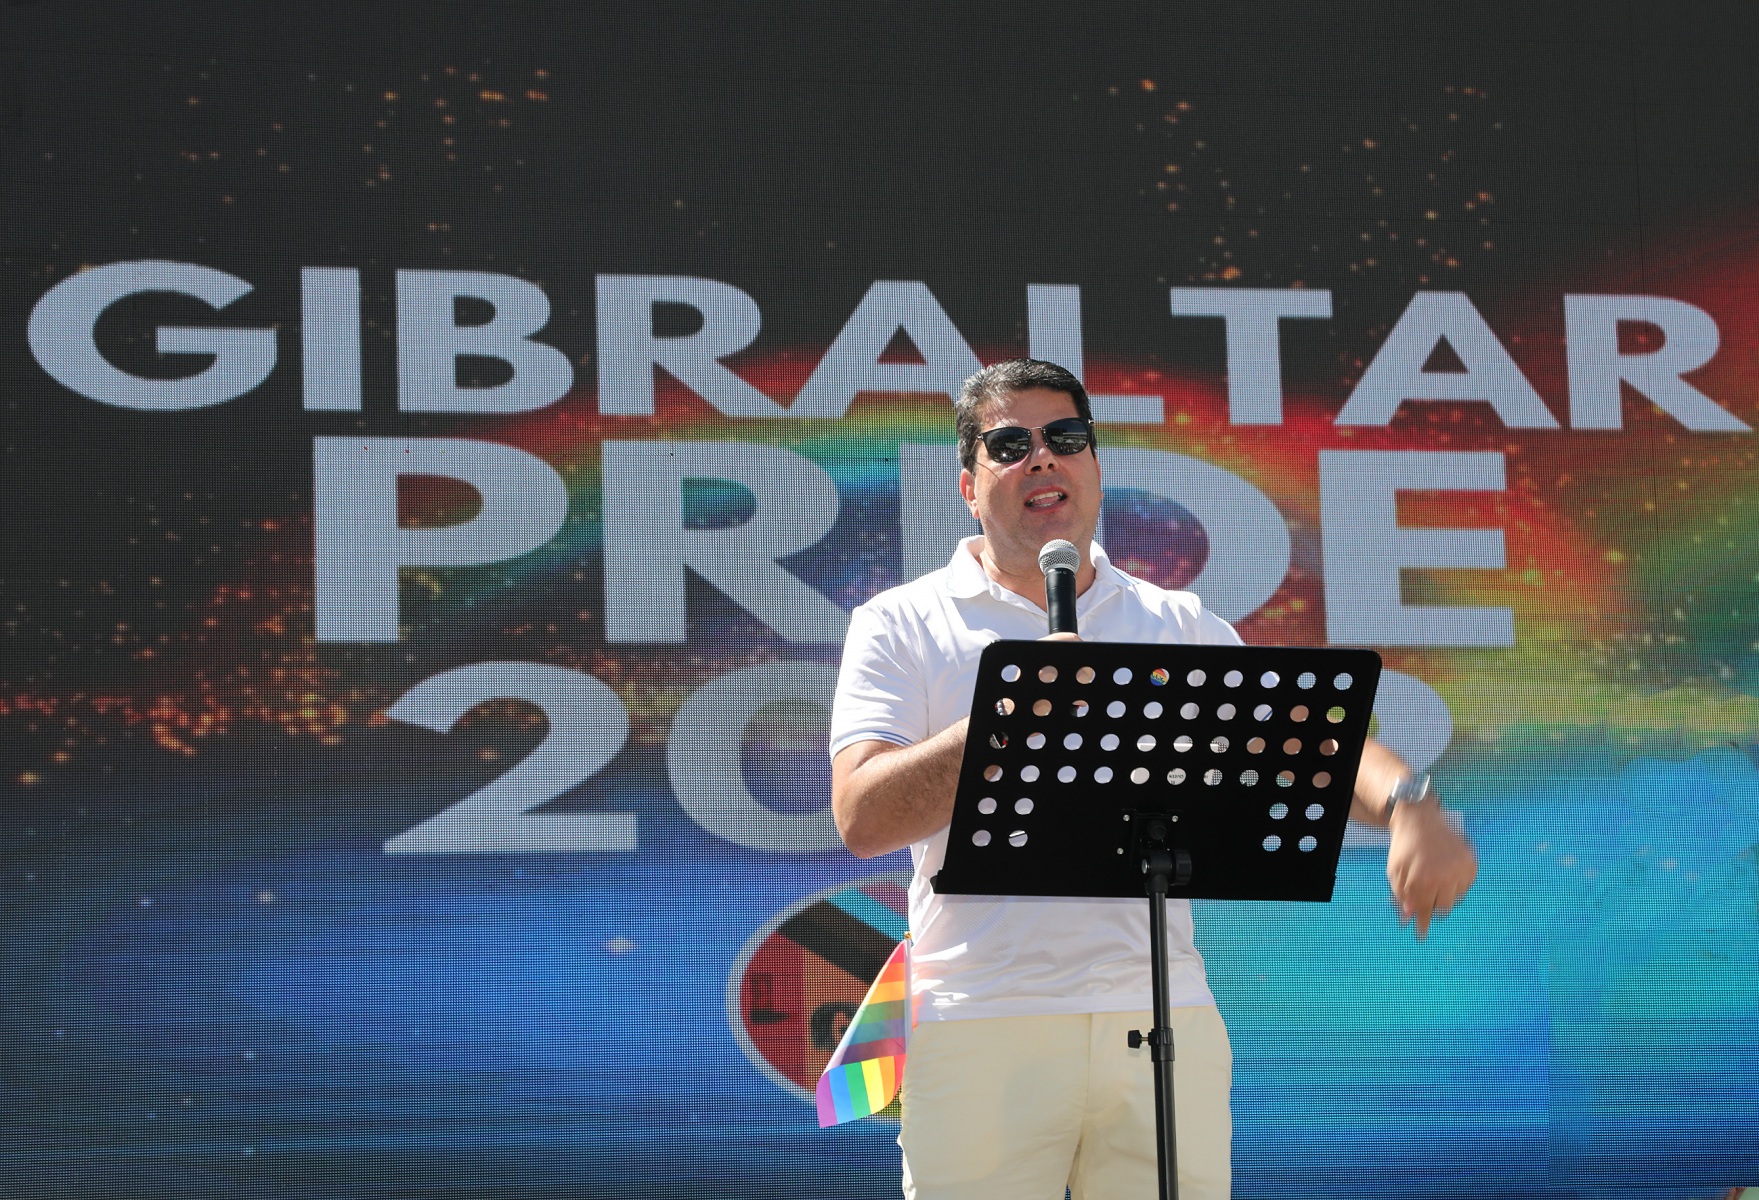 Orgullo-Gibraltar-2022-34-Ministro-Principal